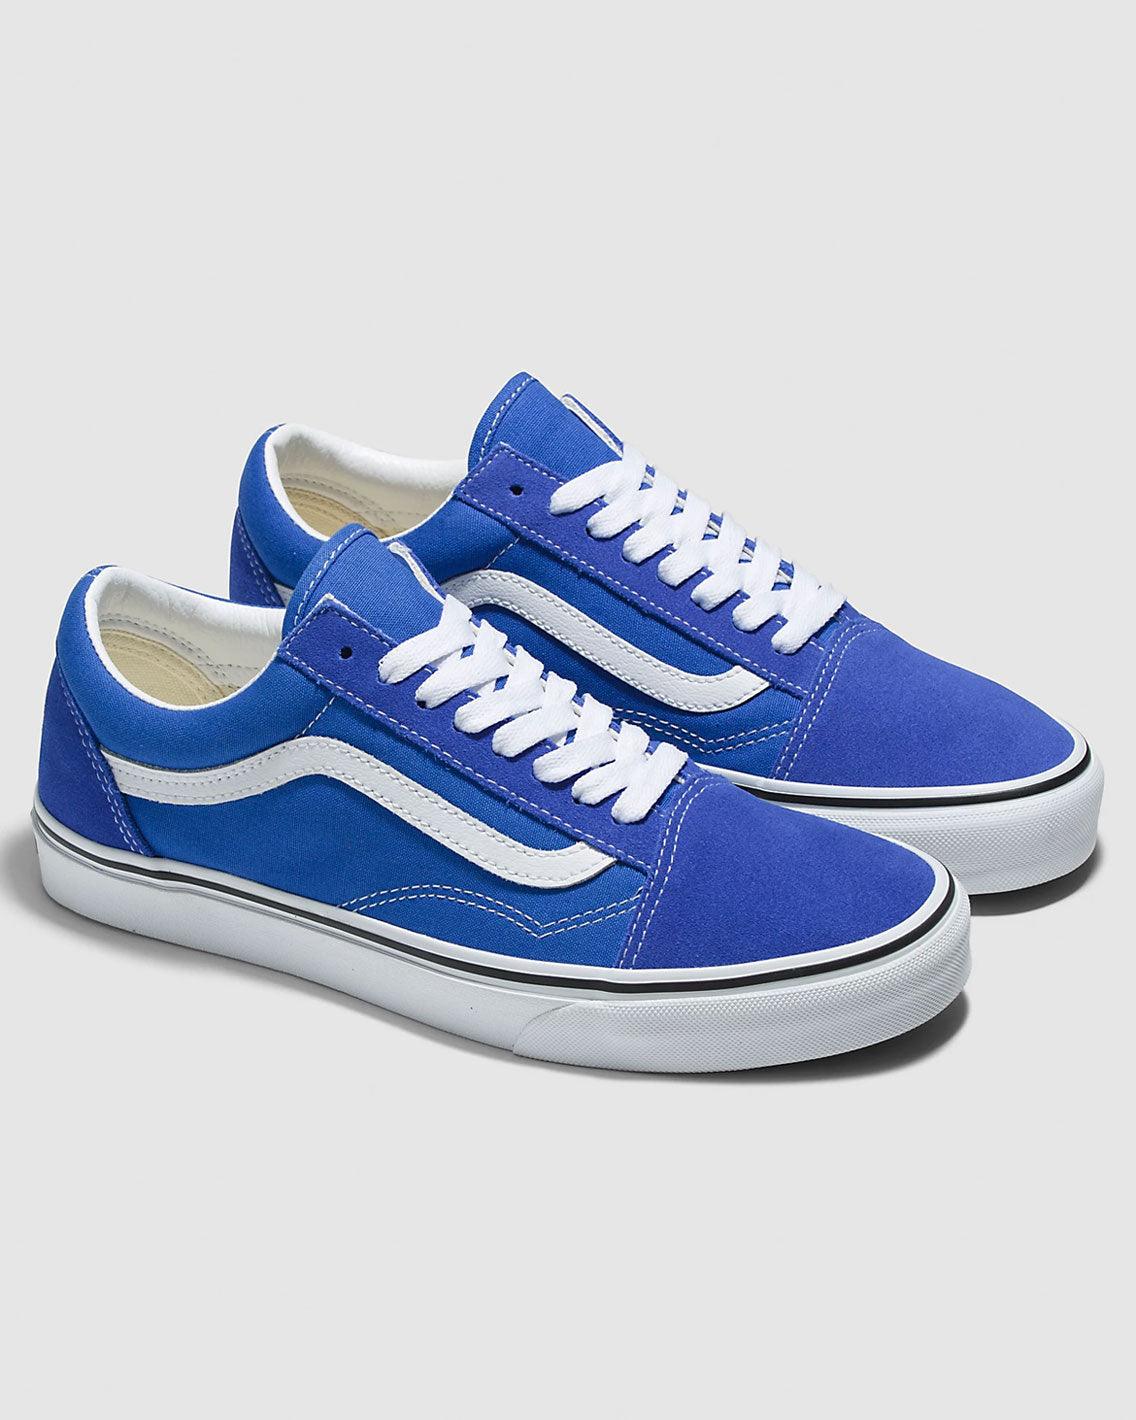 Vans - Old Skool - Dazzling Blue Shoes Vans   